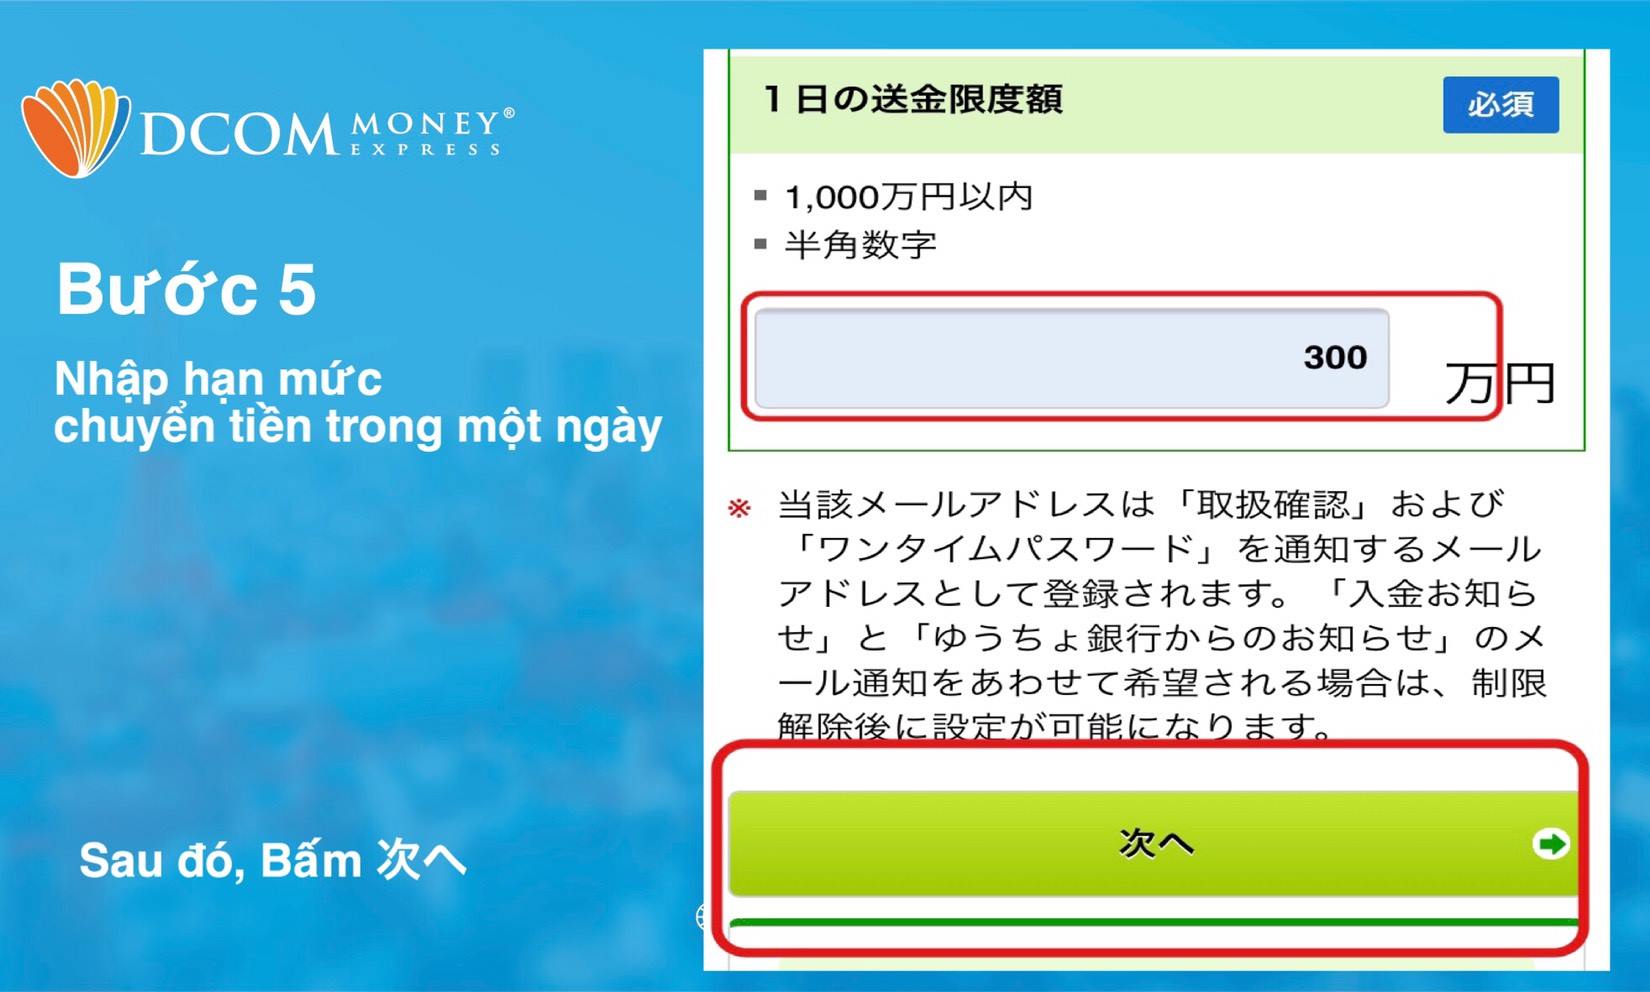 Hạn mức tối đa 1000万円/ngày